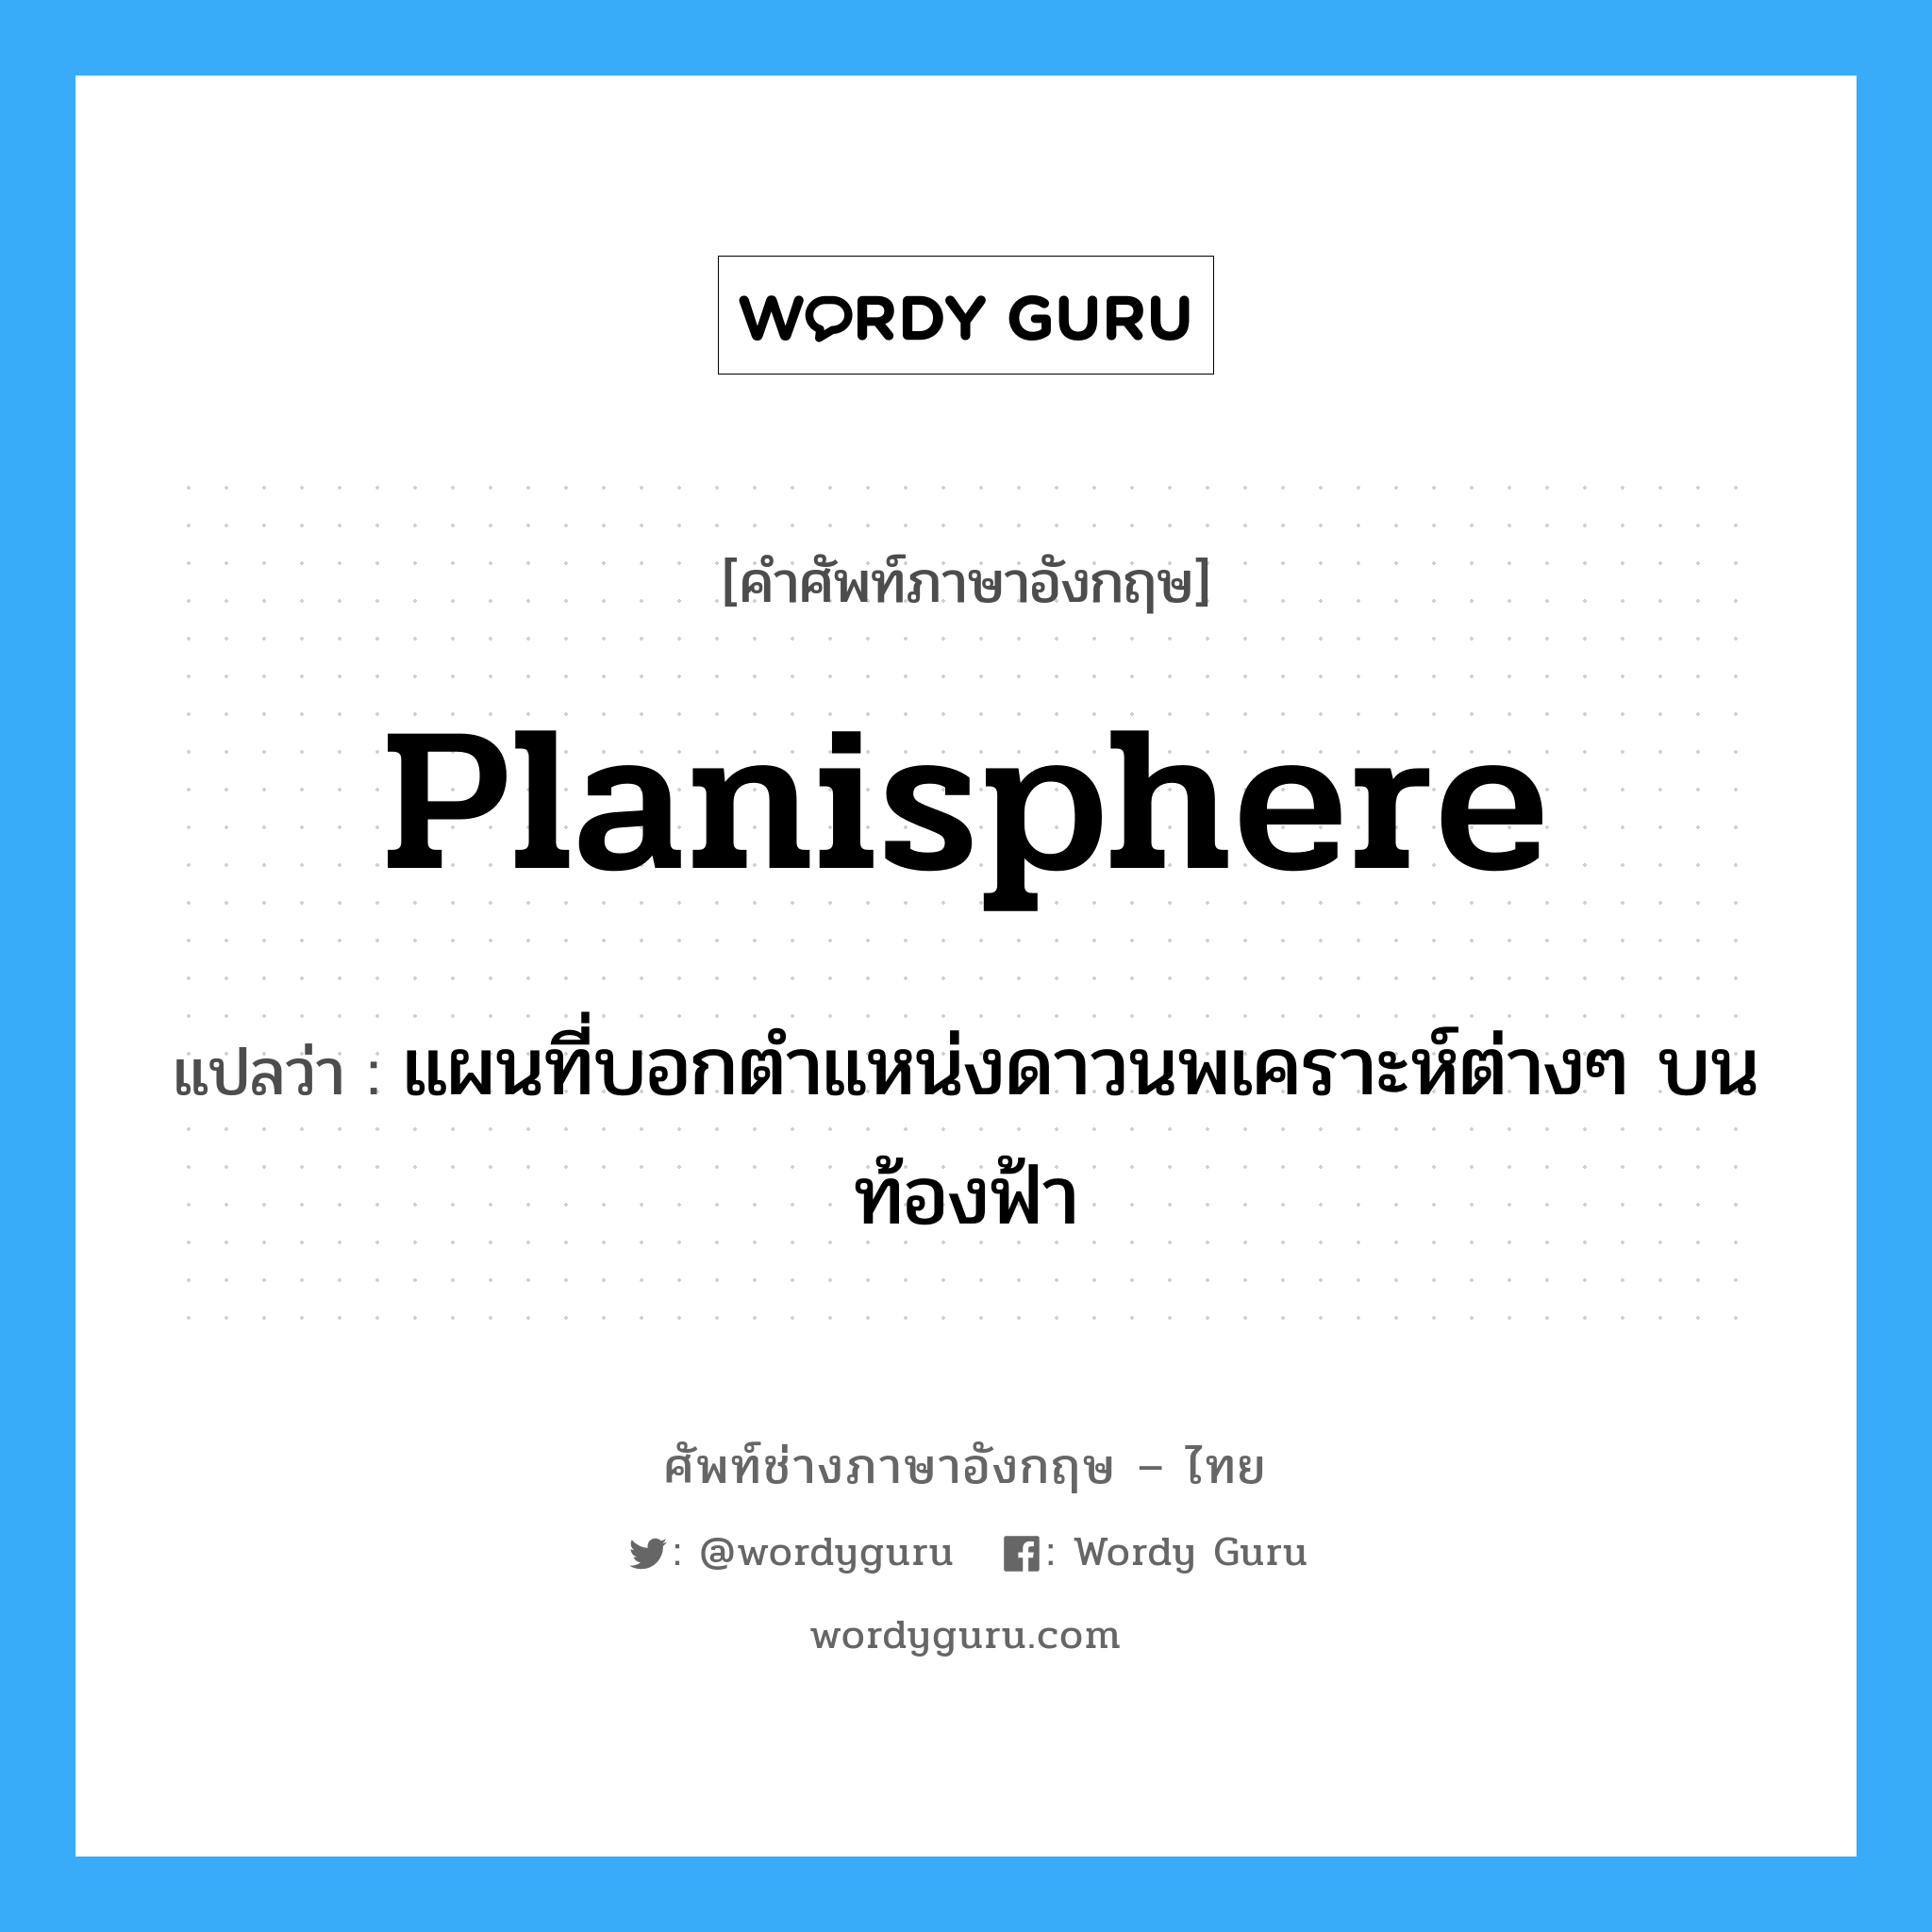 planisphere แปลว่า?, คำศัพท์ช่างภาษาอังกฤษ - ไทย planisphere คำศัพท์ภาษาอังกฤษ planisphere แปลว่า แผนที่บอกตำแหน่งดาวนพเคราะห์ต่างๆ บนท้องฟ้า